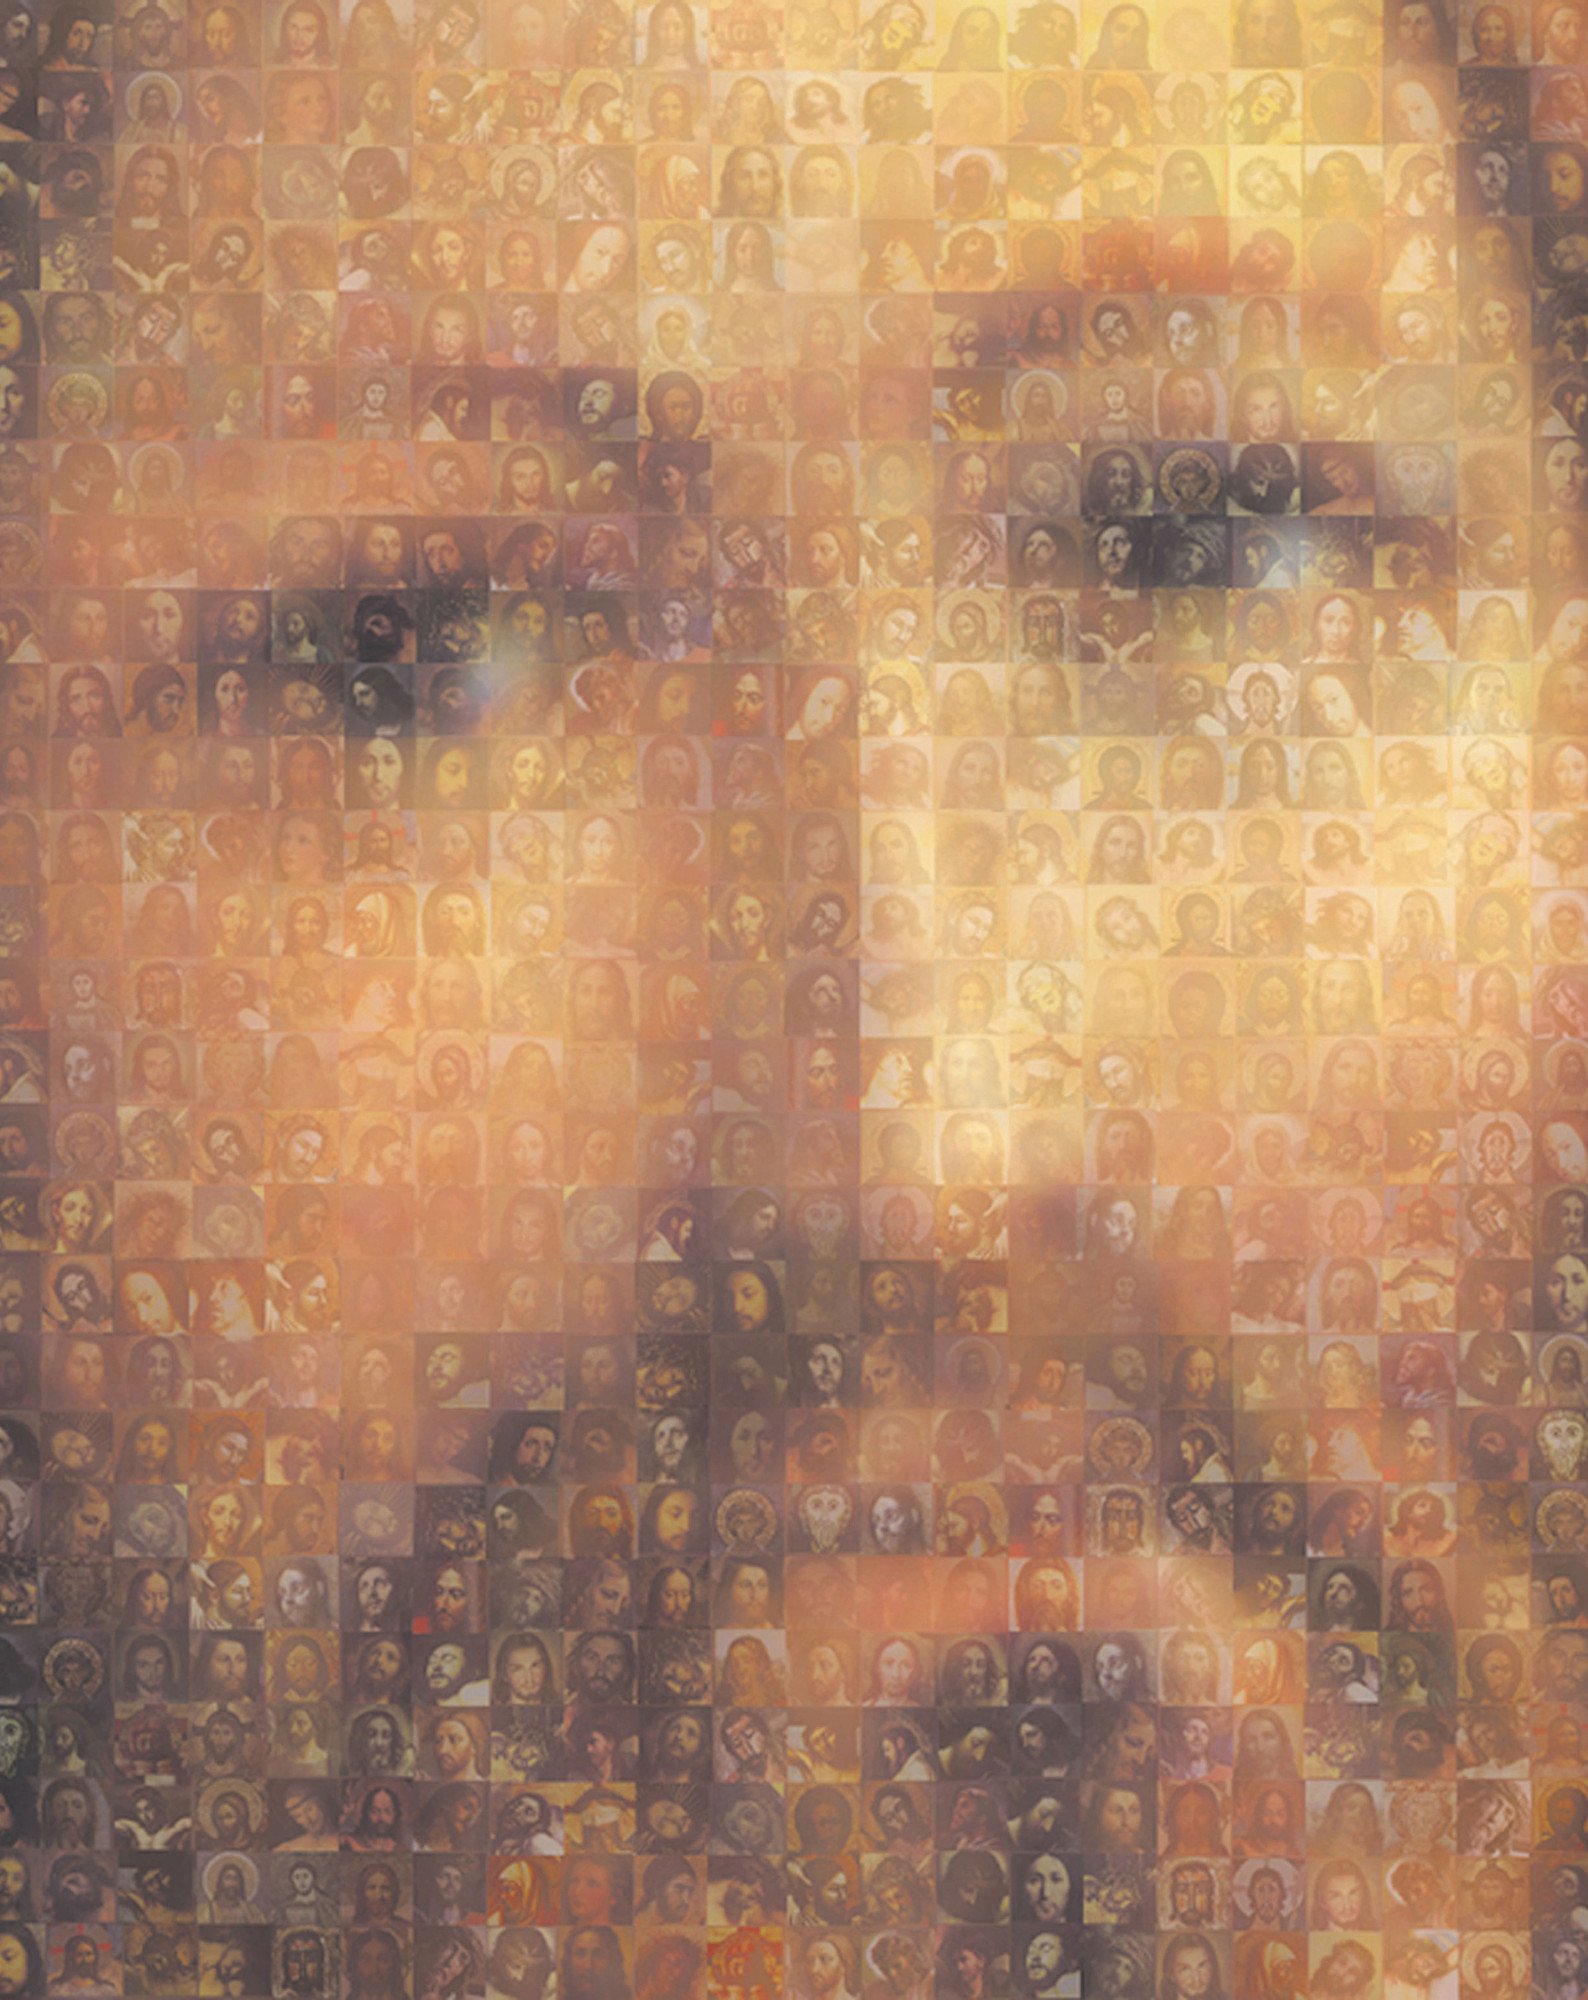 (151) Instalación de mosaicos digitales Las Mil Caras de Jesús y María. Santa Bárbara dedicada a los inmigrantes, Buenos Aires, Argentina. 2010.jpg